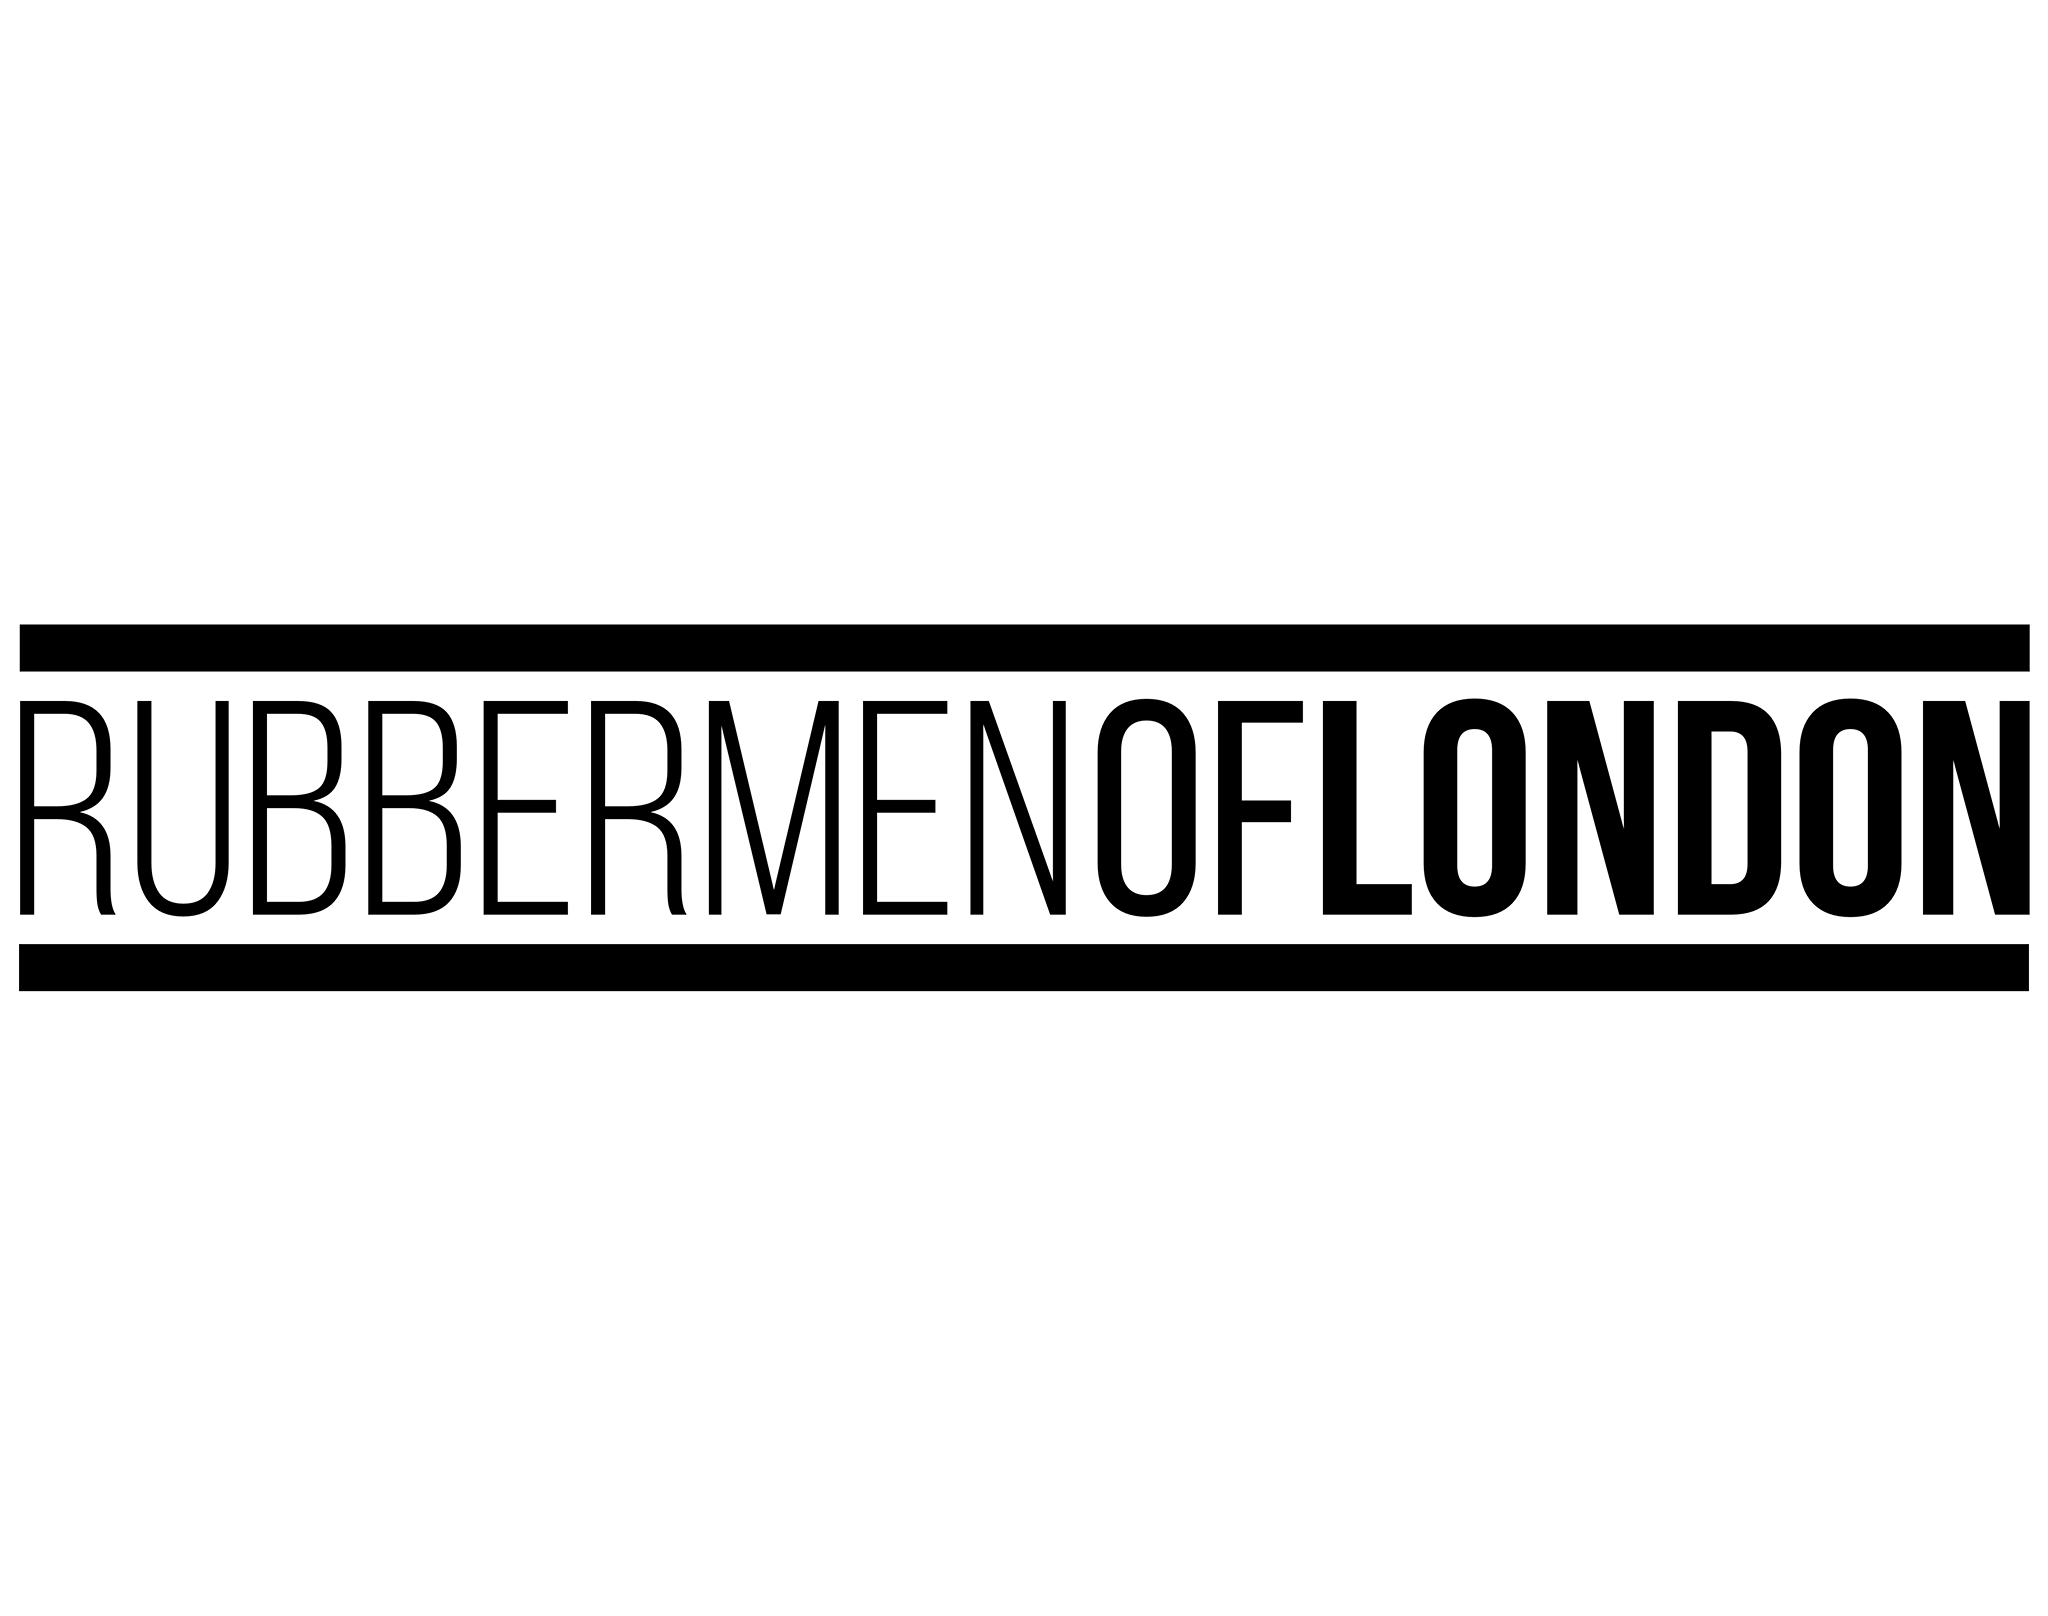 Rubbermen of London